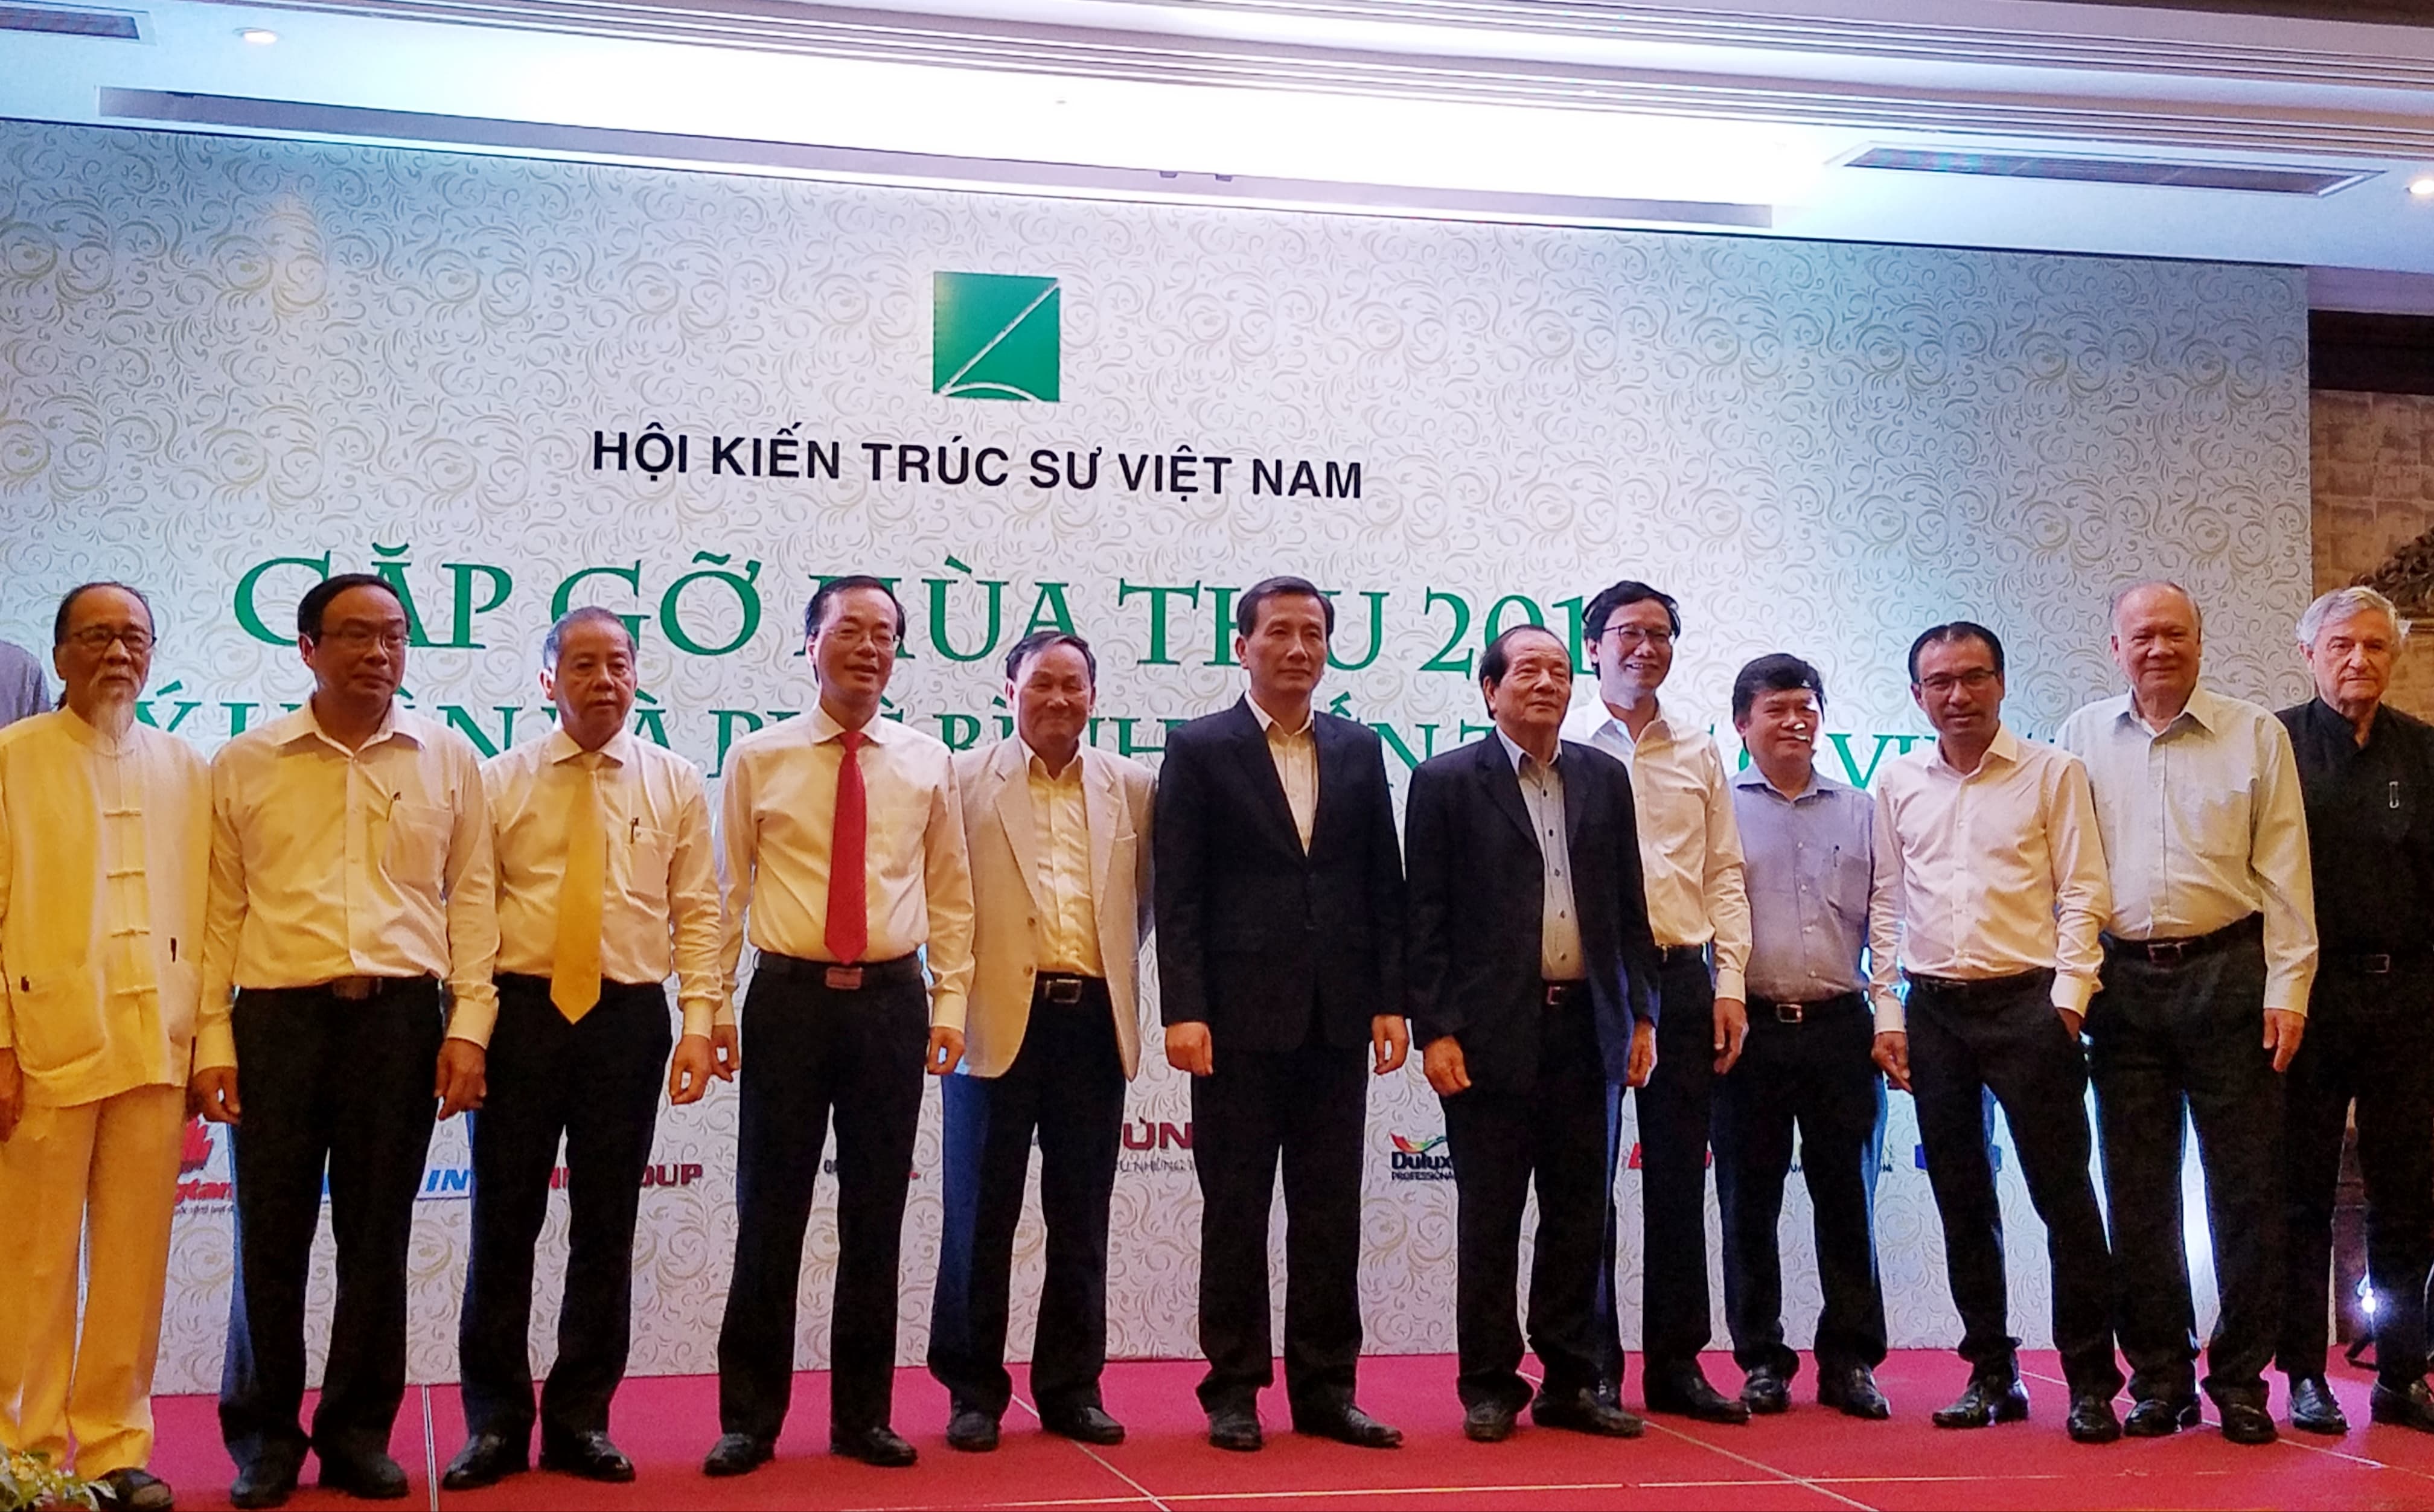 Các đại biểu và chuyên gia khoa học, nhà quản lý tham dự Hội nghị Lý luận và phê bình kiến trúc ở Việt Nam ngày 17/11/2018